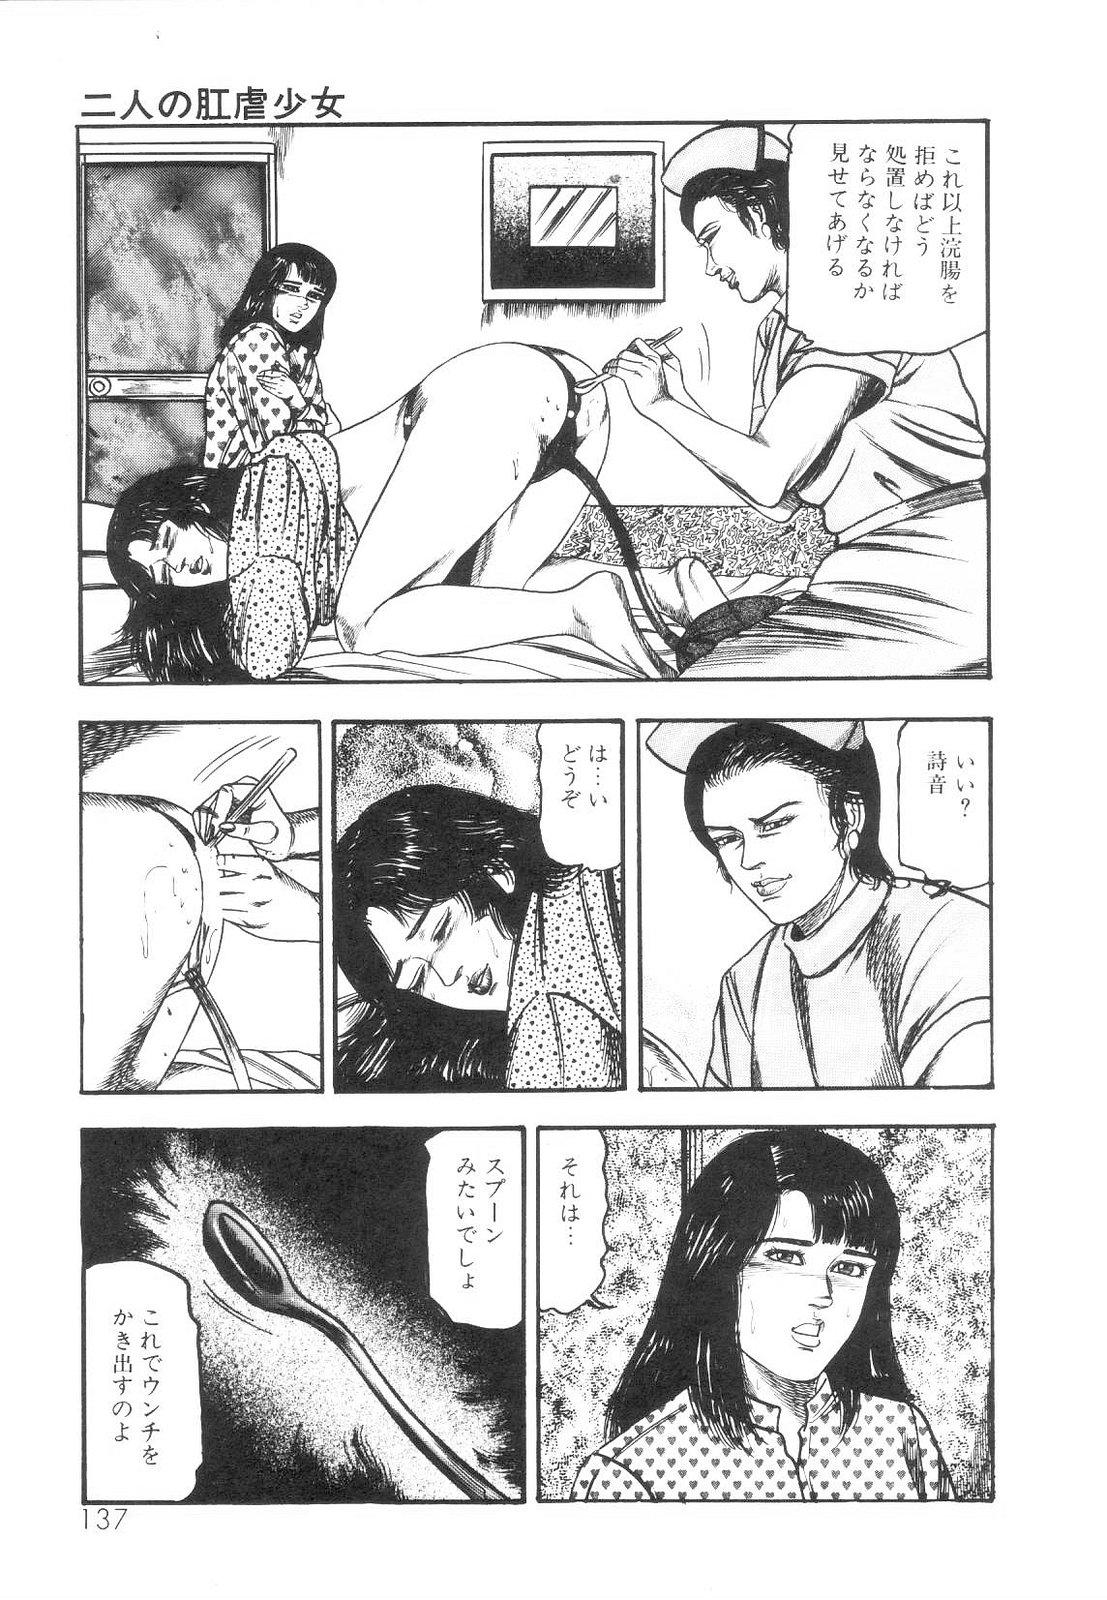 Shiro no Mokushiroku Vol. 1 - Sei Shojo Shion no Shou 137